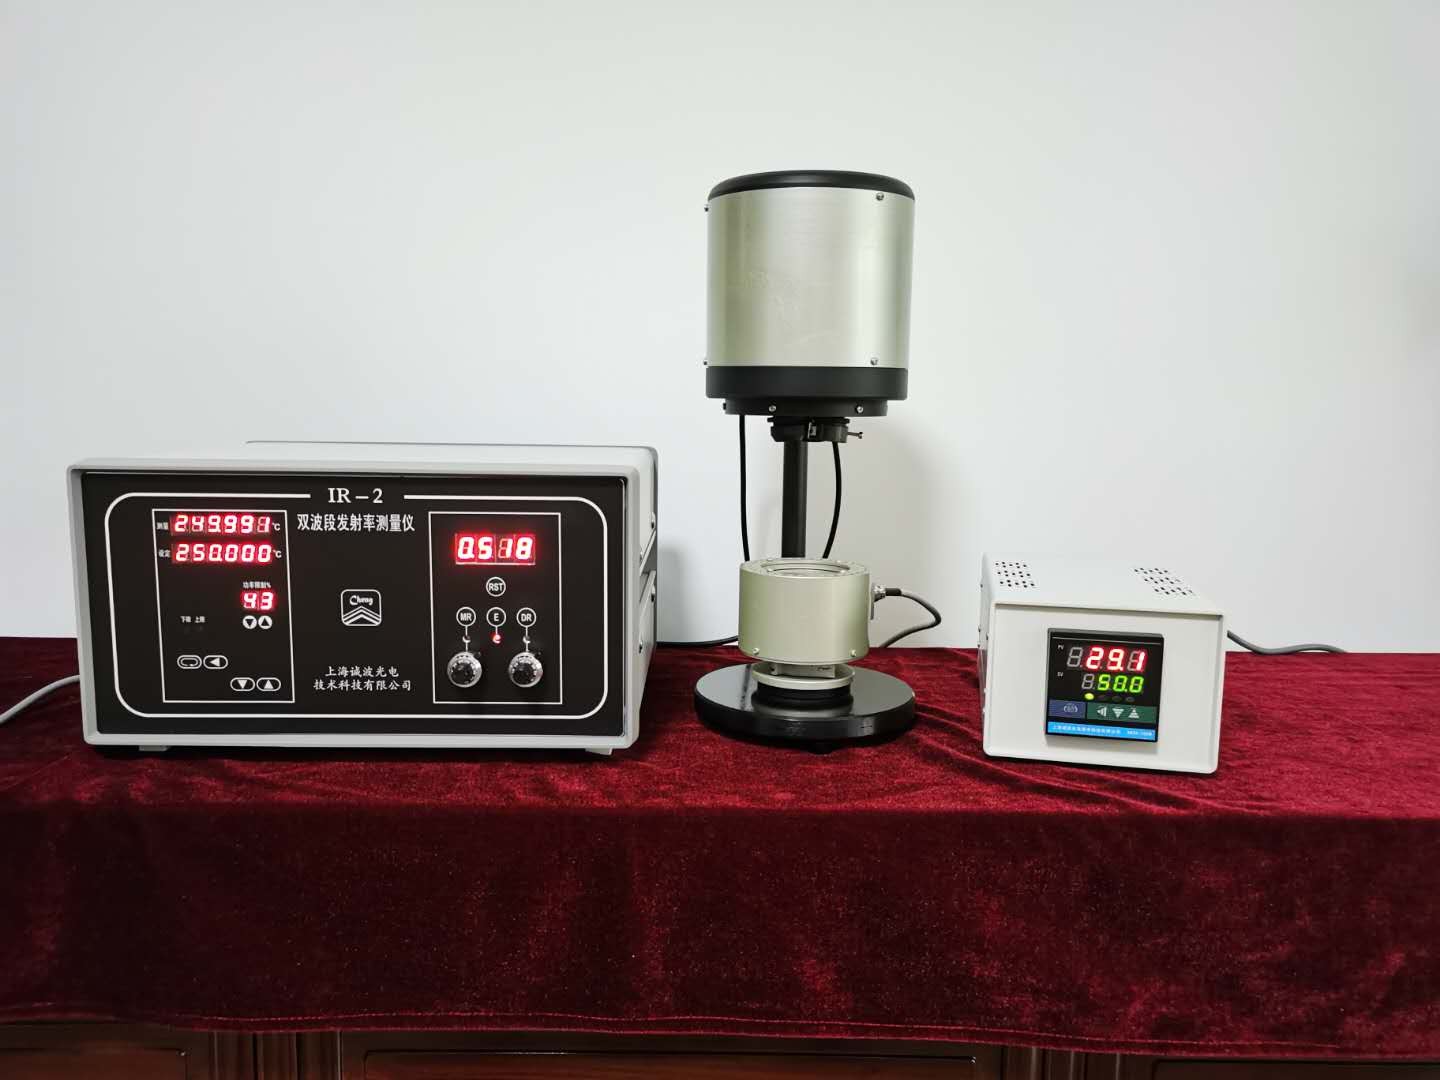 IR-2双波段发射率测量仪(常温-300℃)